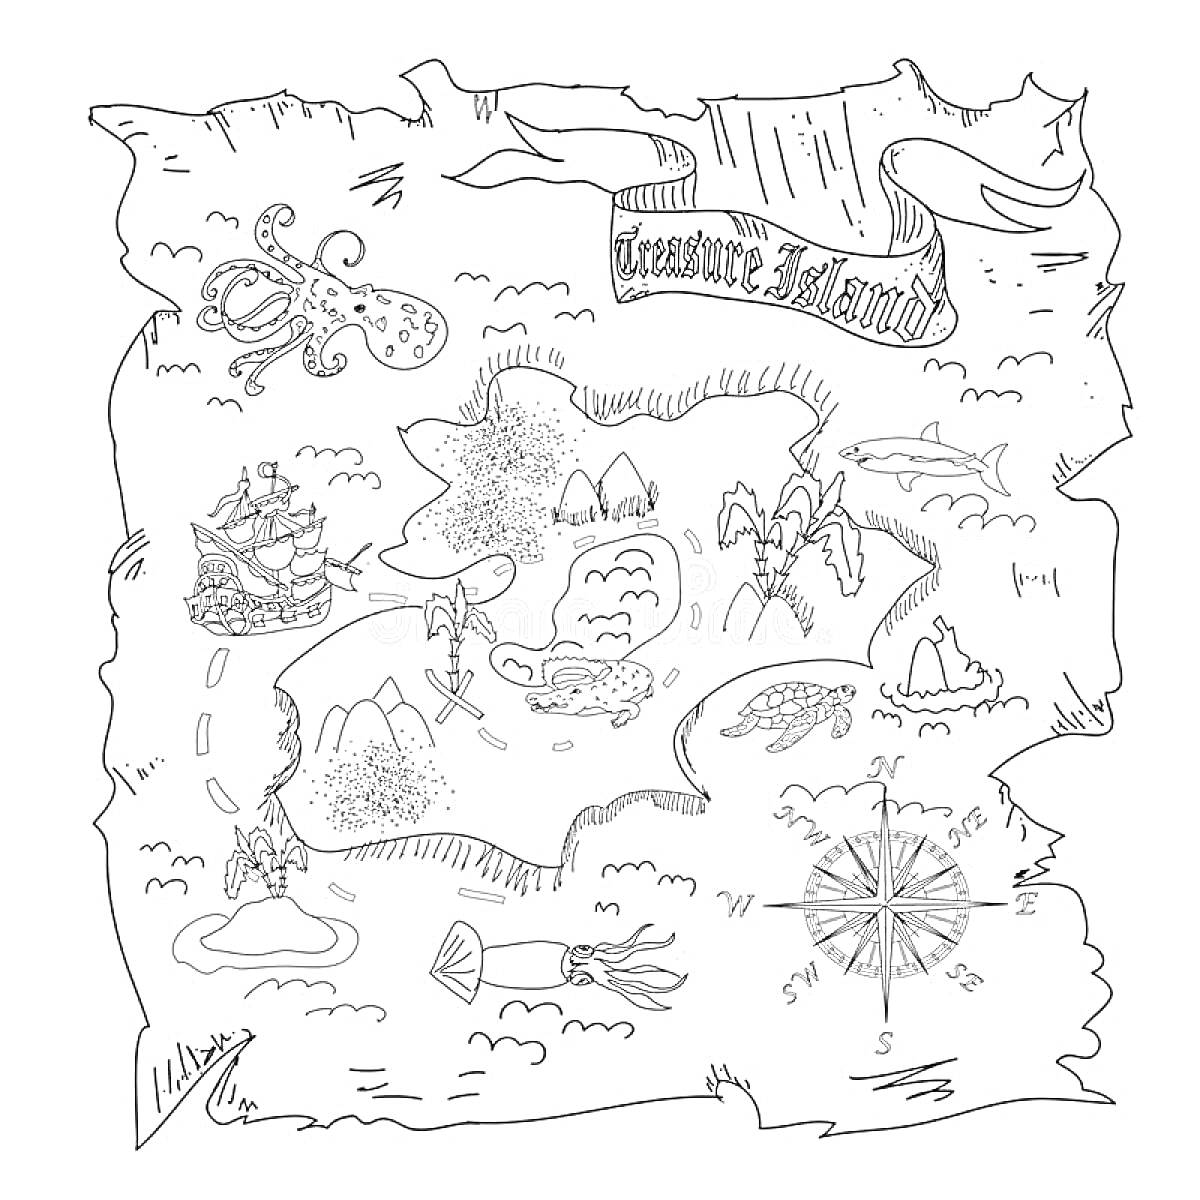 Карта Сокровищ с островом, пиратами, кораблем, осьминогом, лодкой, горами, компасом и крабом